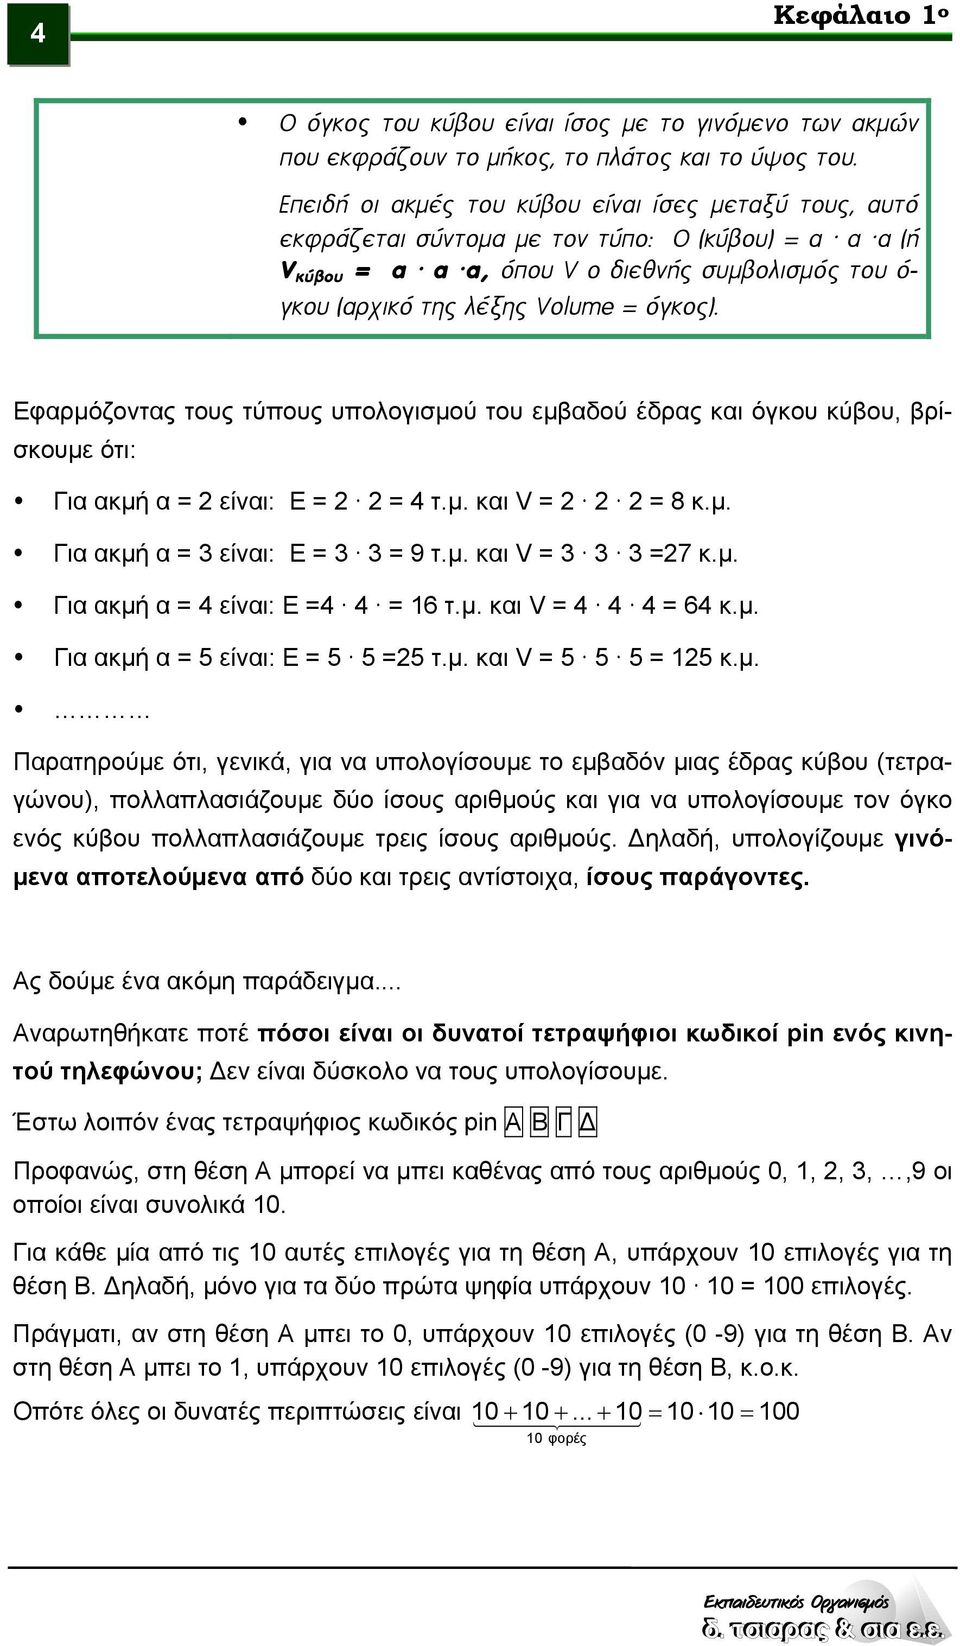 Εφαρμόζοντας τους τύπους υπολογισμού του εμβαδού έδρας και όγκου κύβου, βρίσκουμε ότι: Για ακμή α = 2 είναι: Ε = 2 2 = 4 τ.μ. και V = 2 2 2 = 8 κ.μ. Για ακμή α = 3 είναι: Ε = 3 3 = 9 τ.μ. και V = 3 3 3 =27 κ.